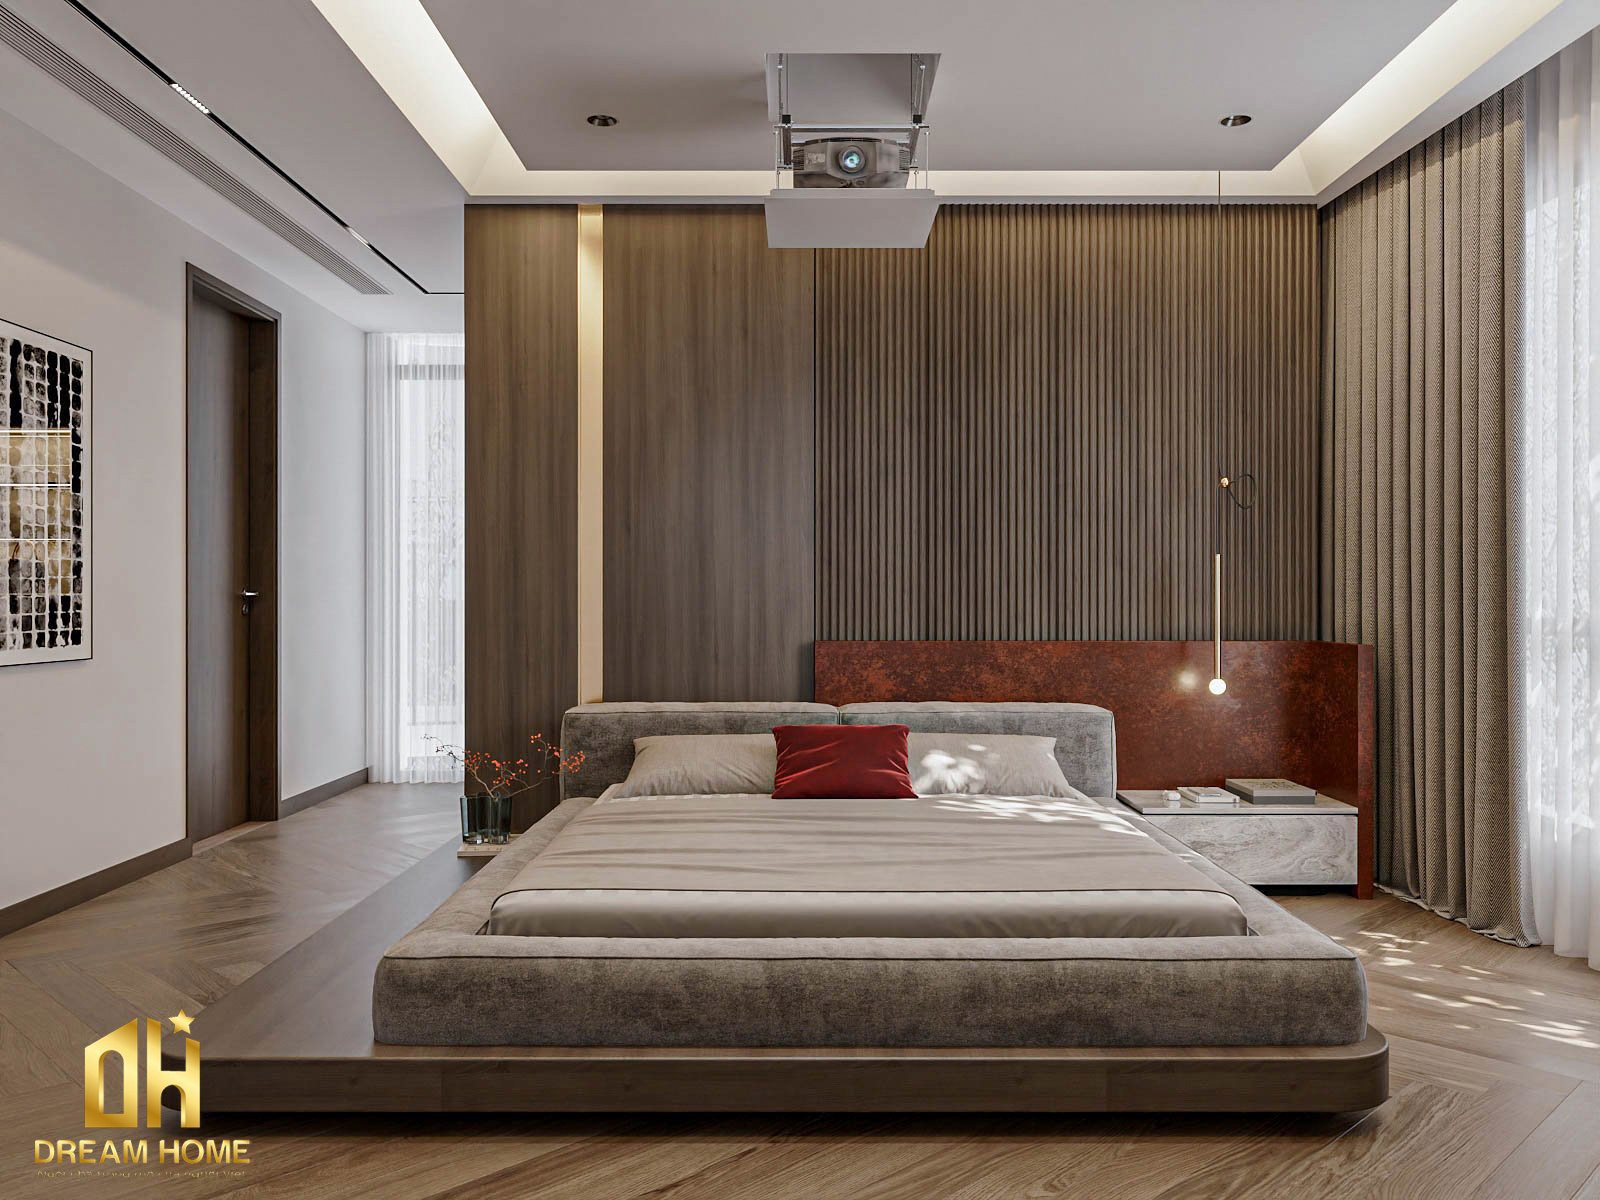 Tường phía sau đầu giường được ốp gỗ tạo ra một không gian phòng ngủ đẳng cấp 